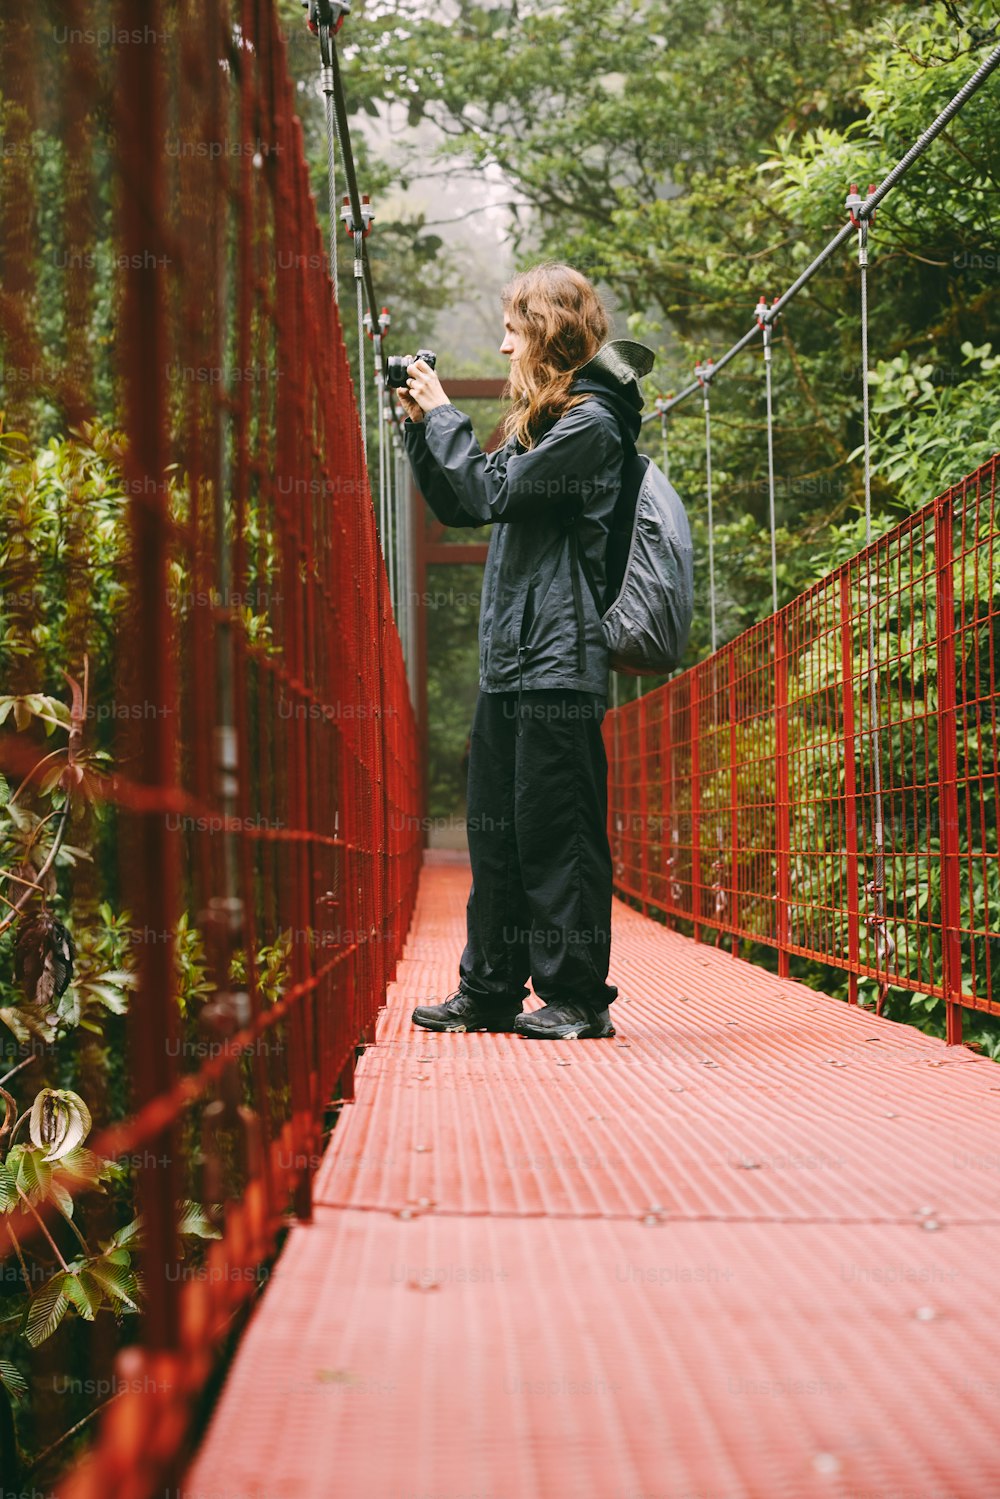 Una mujer parada en un puente rojo tomando una foto